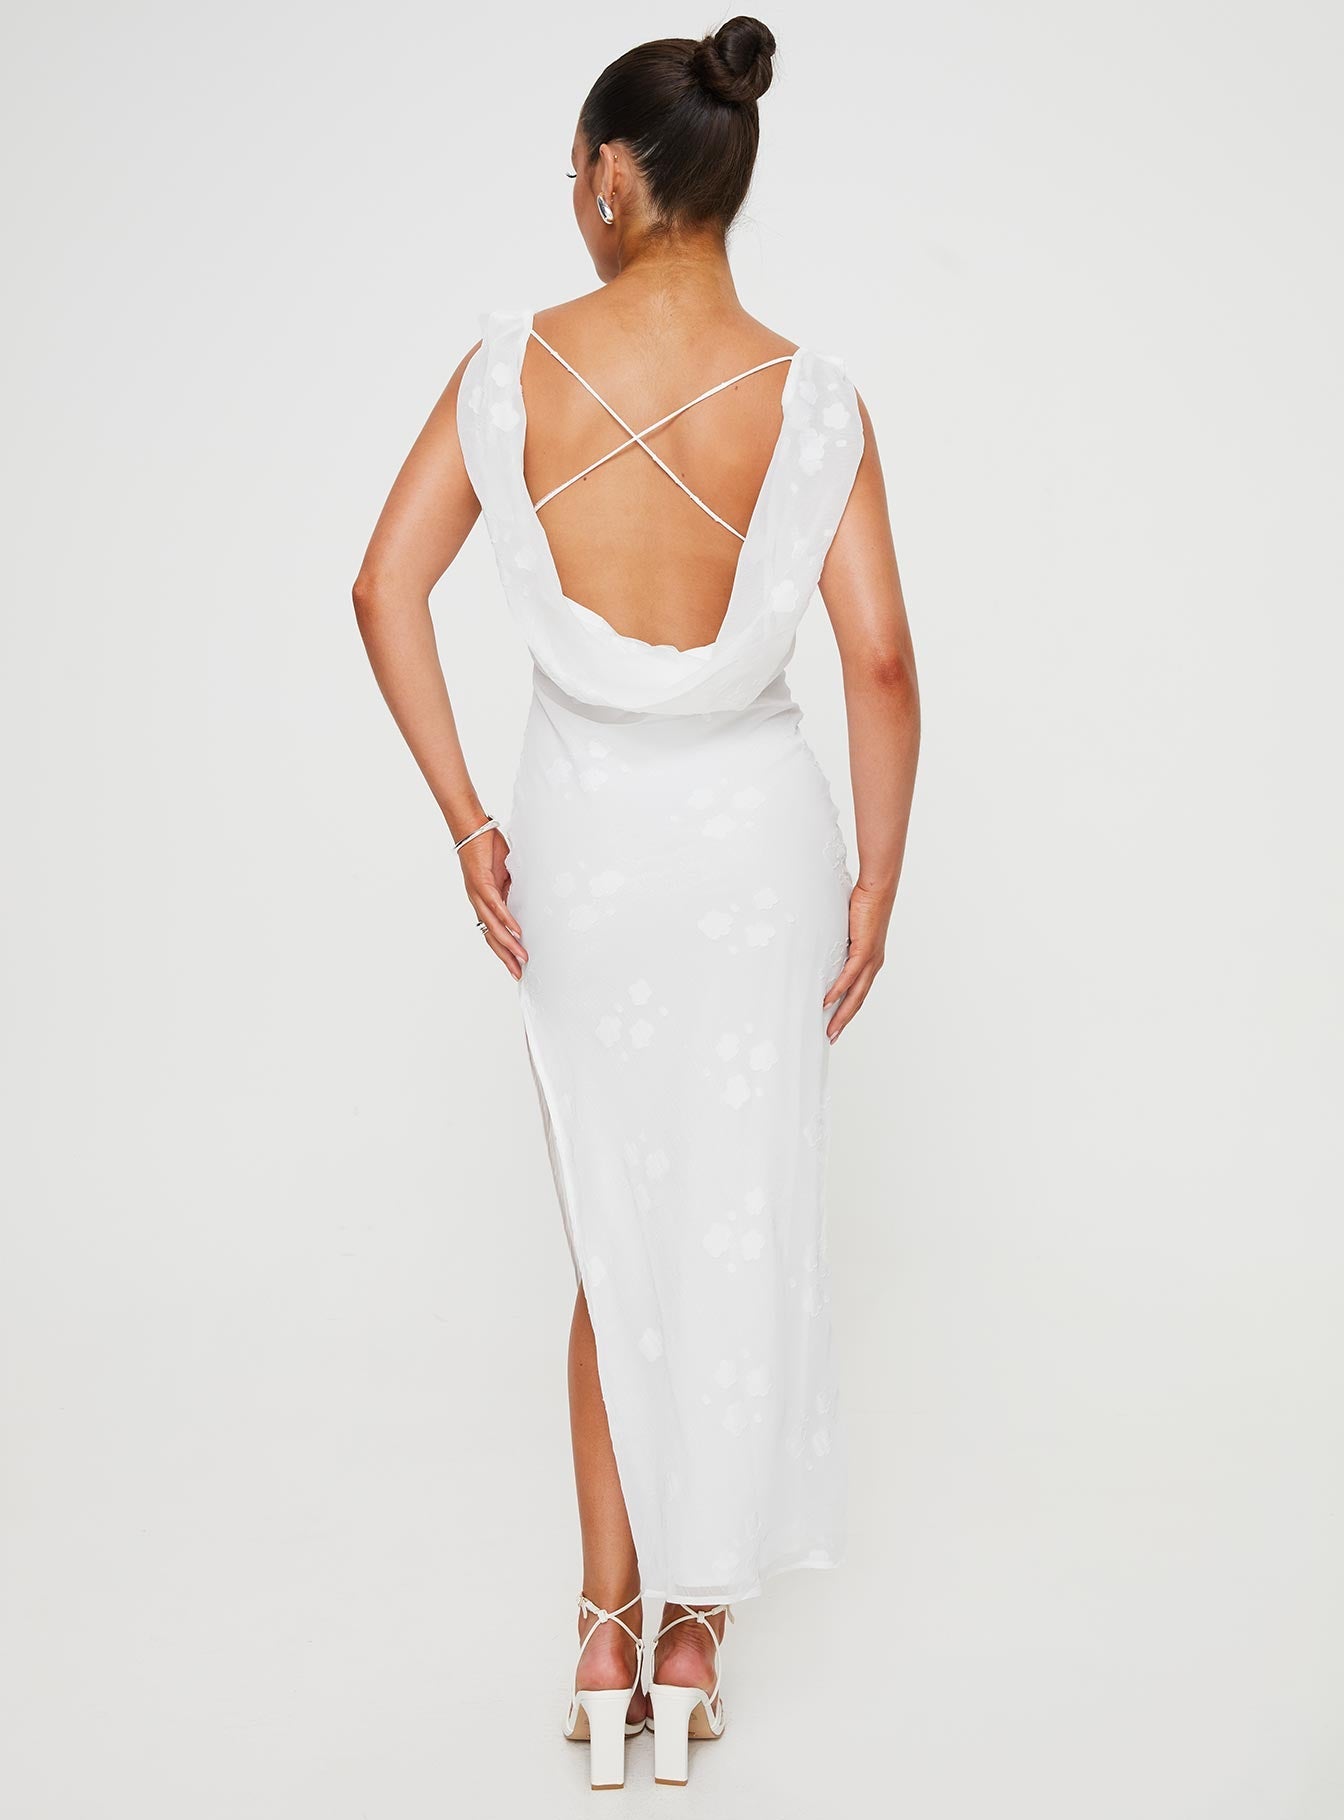 Shop Formal Dress - Contessa Maxi Dress White third image